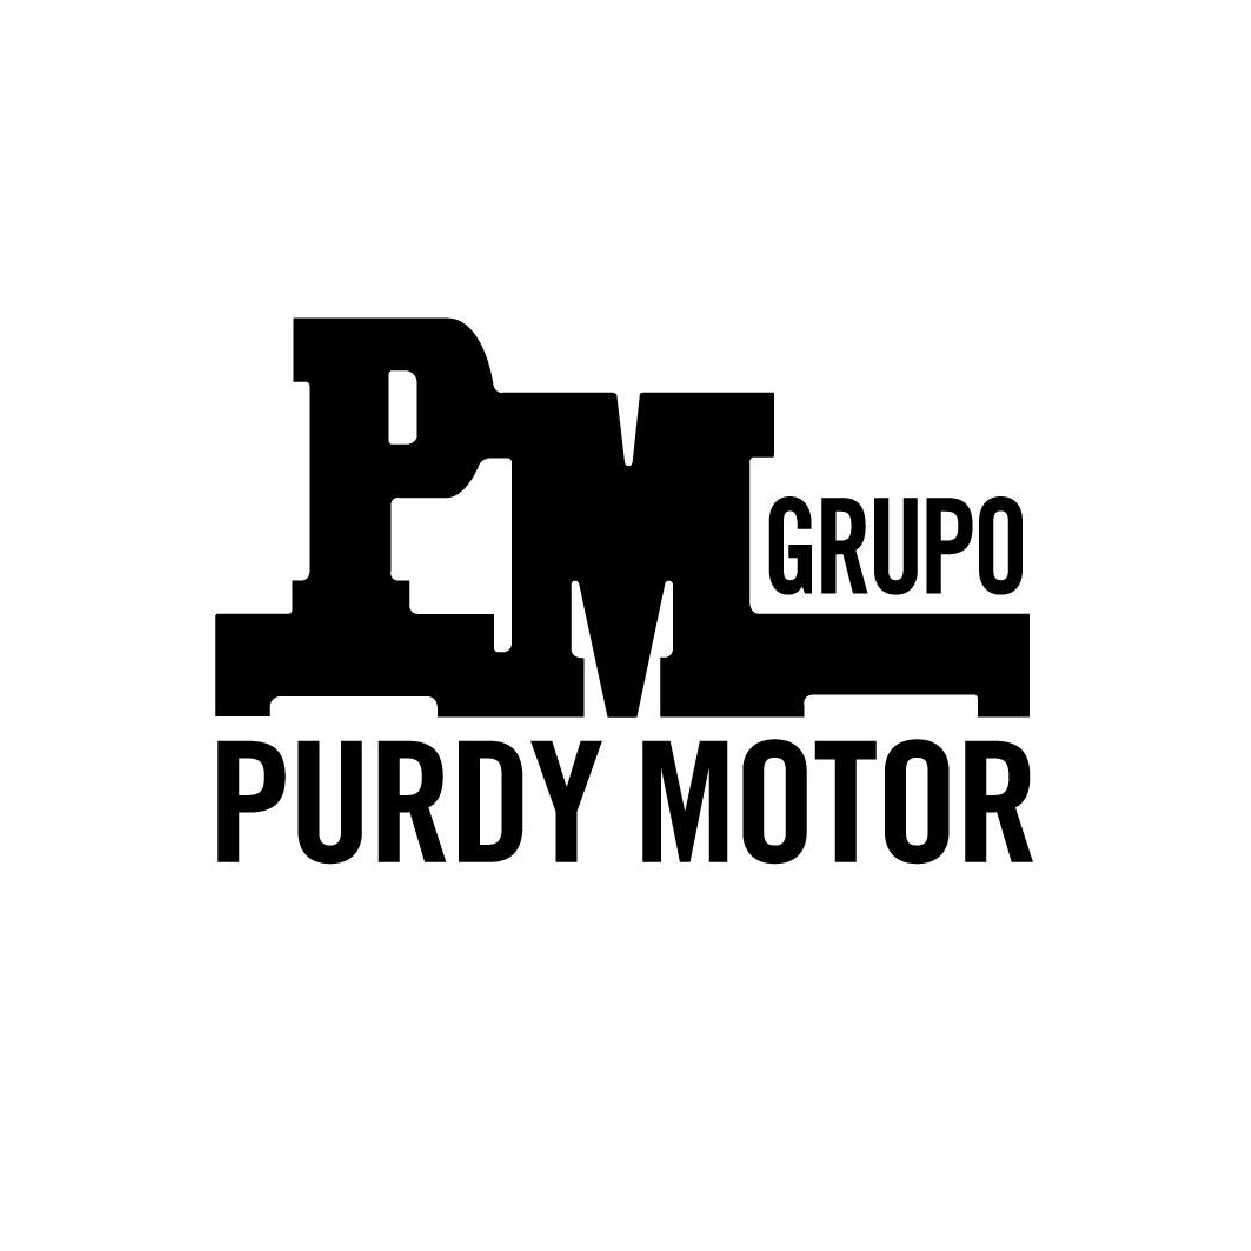 Purdy Motor